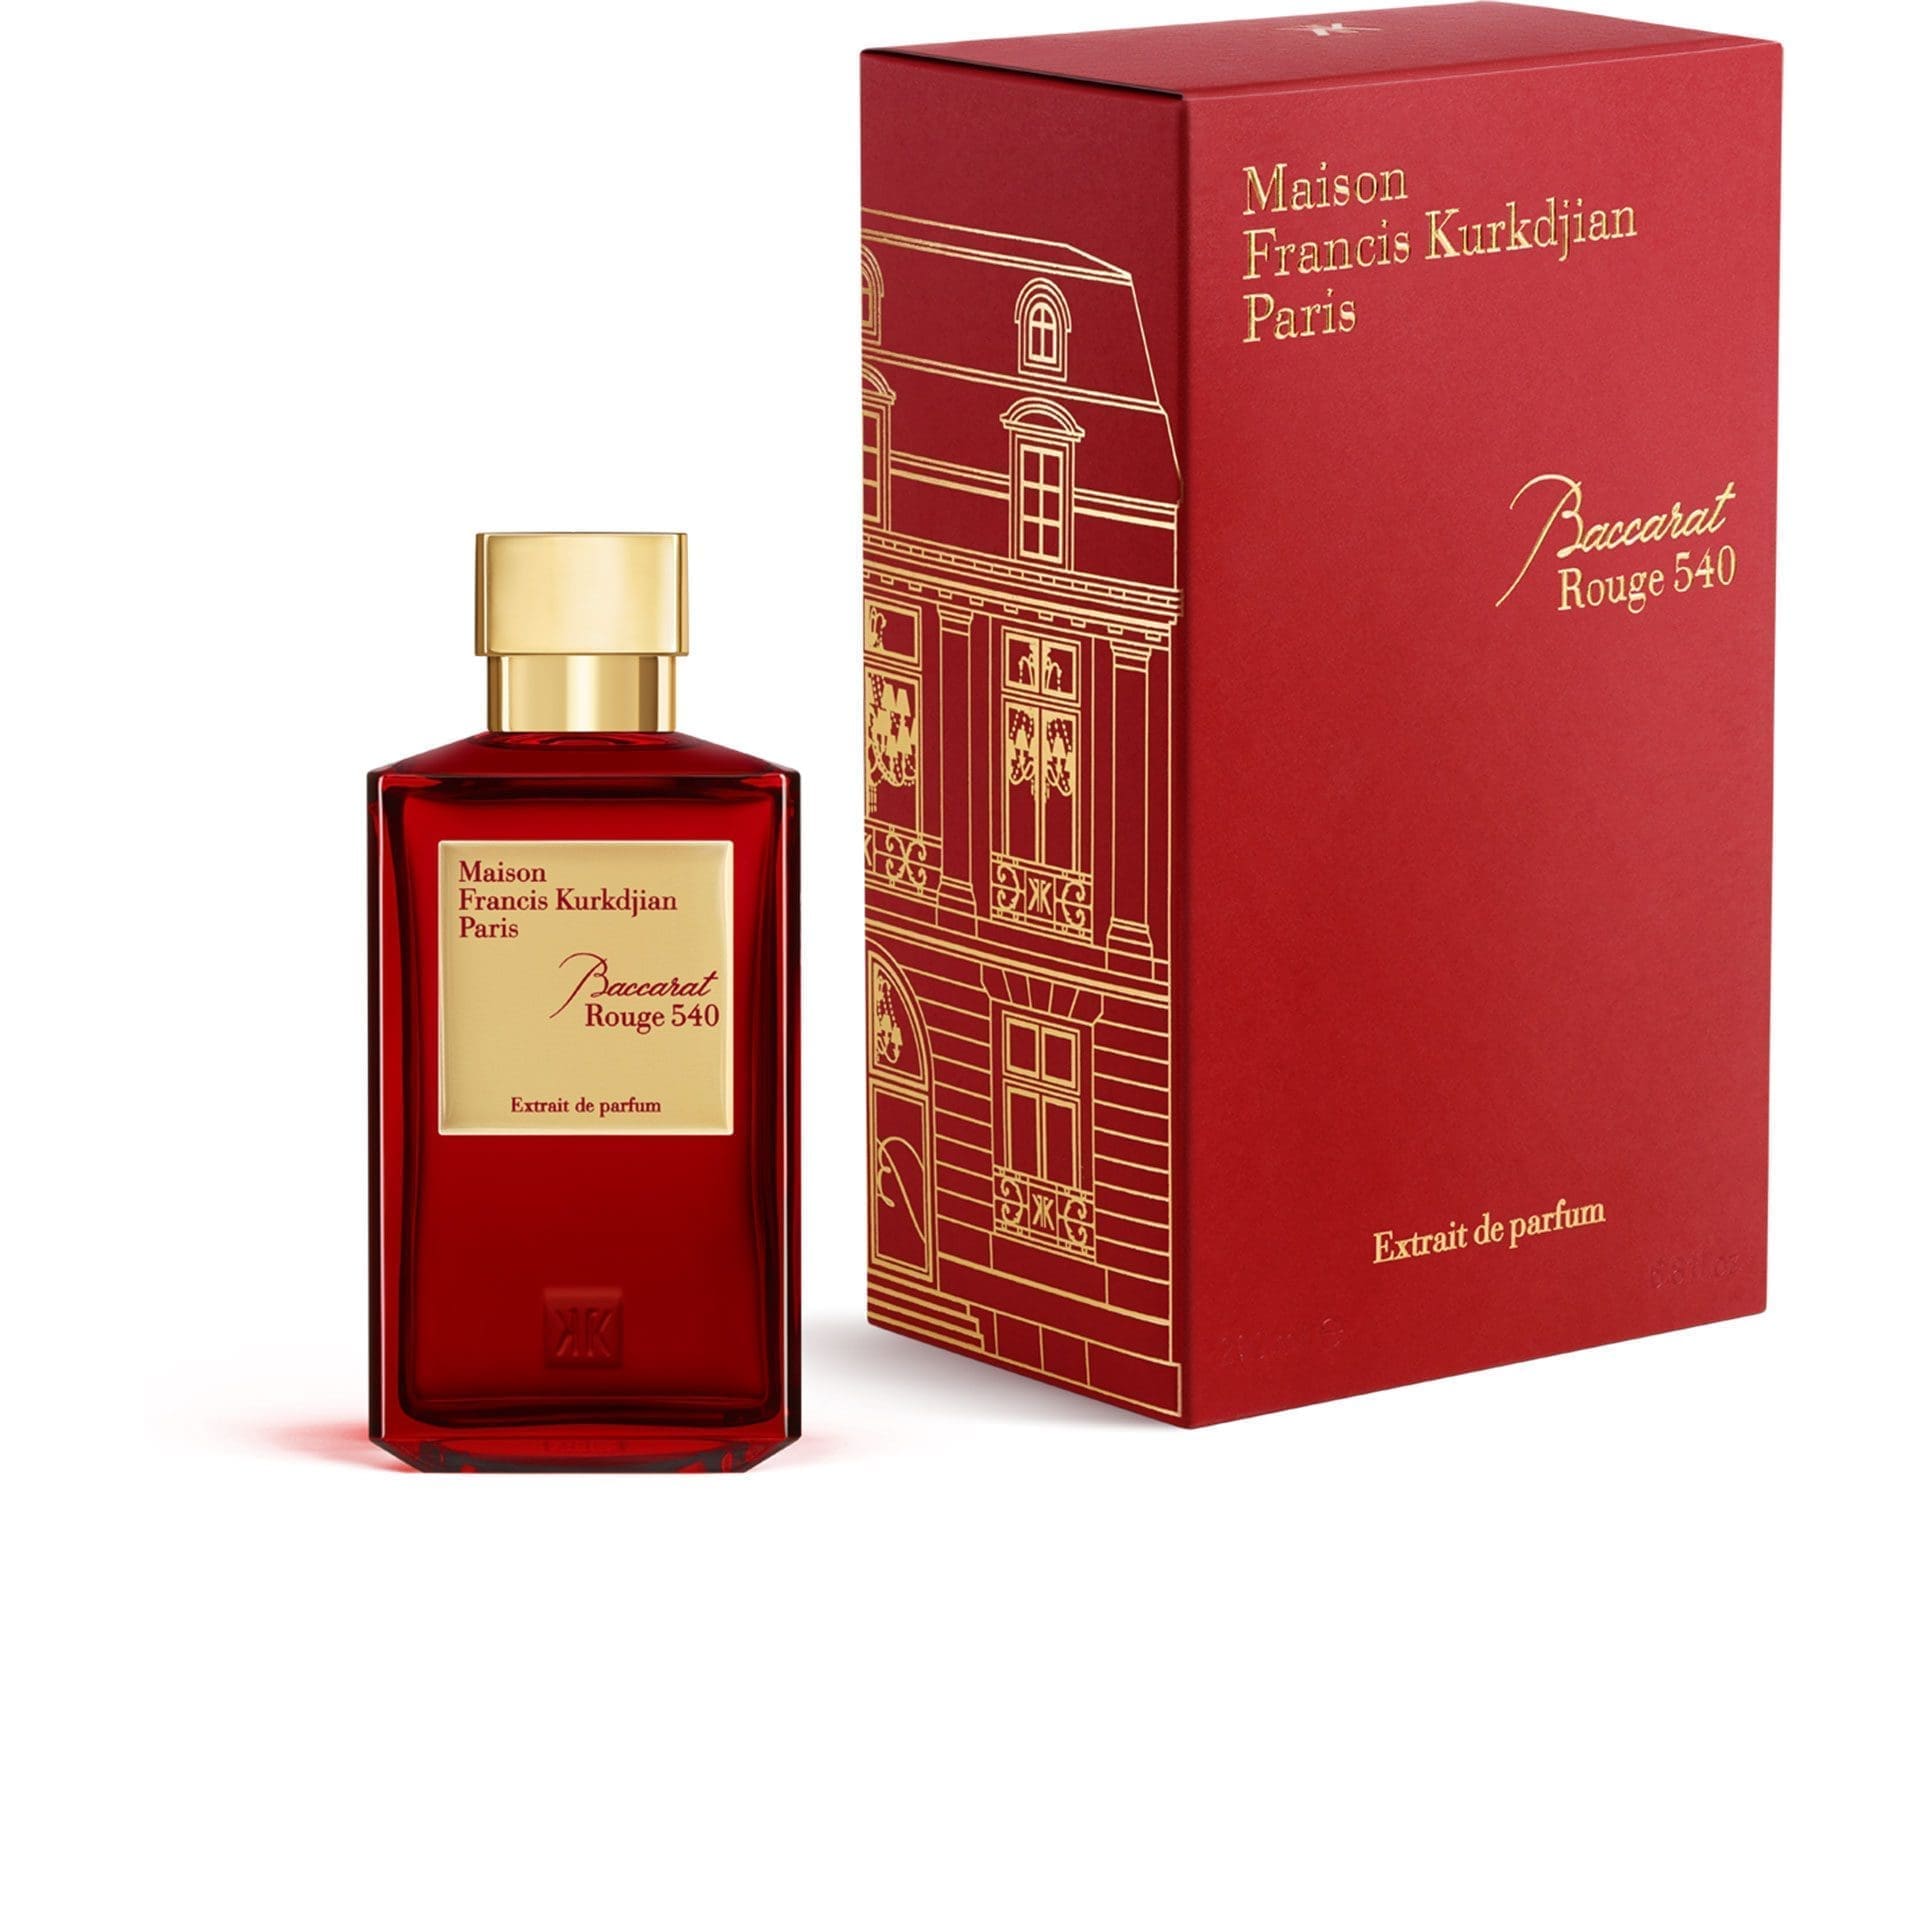 3410 Baccarat Rouge 540 Extrait de Parfum Maison Francis Kurkdjian 200 ml